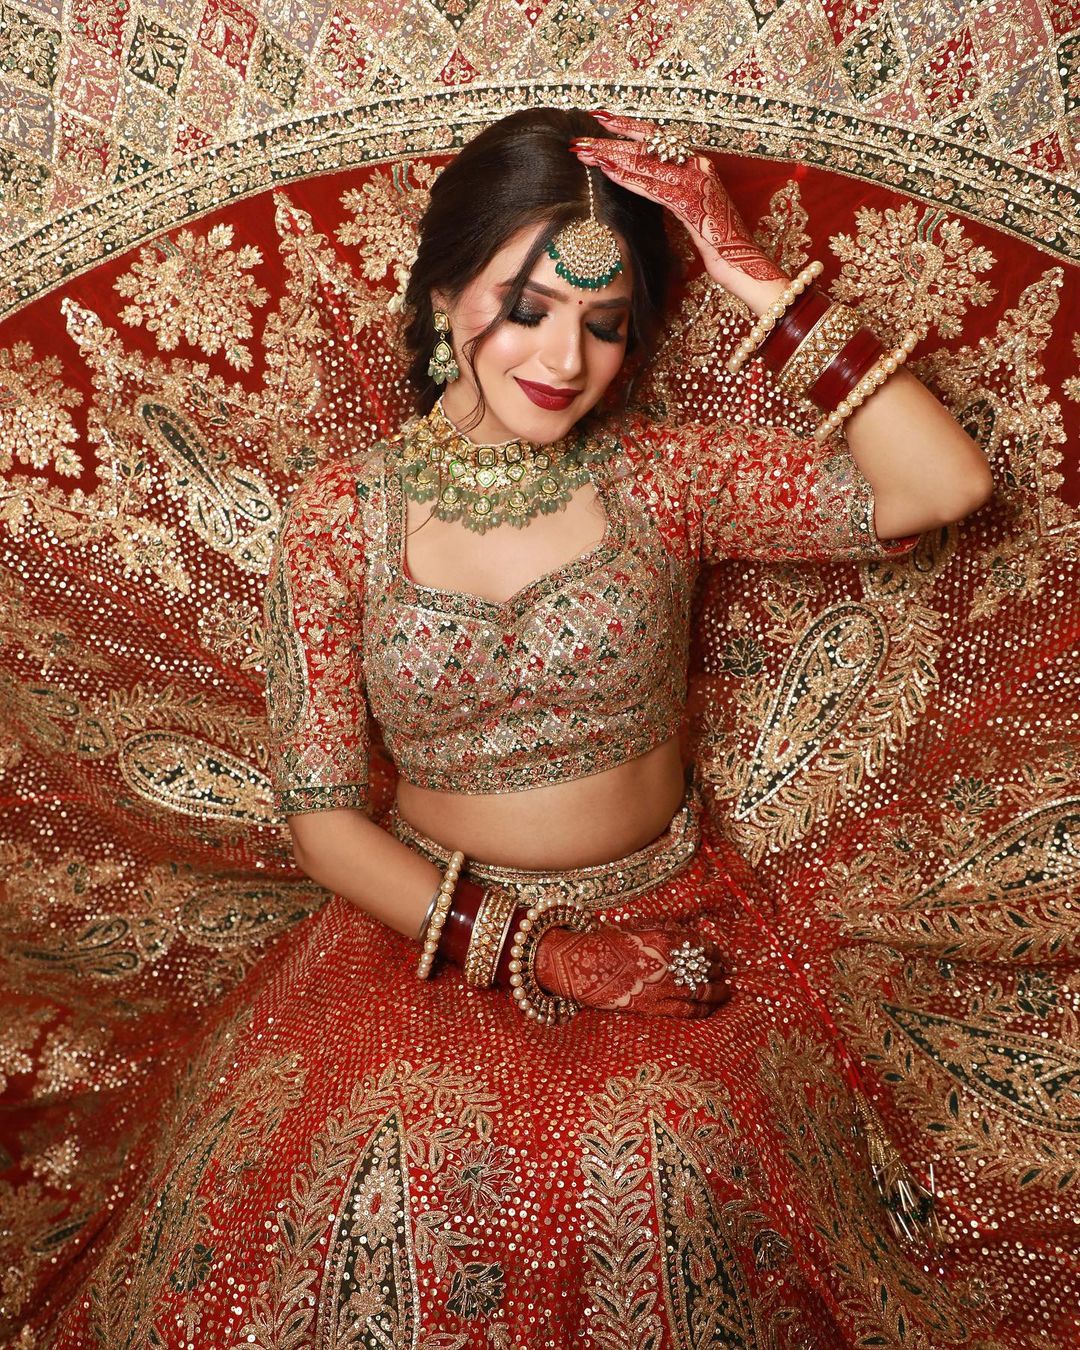 Designer Maroon Lehenga Choli Indian Wedding Lehenga Choli Bridal Lehenga  With Heavy Embroidery Work With Double Duppata Lehenga for Women - Etsy